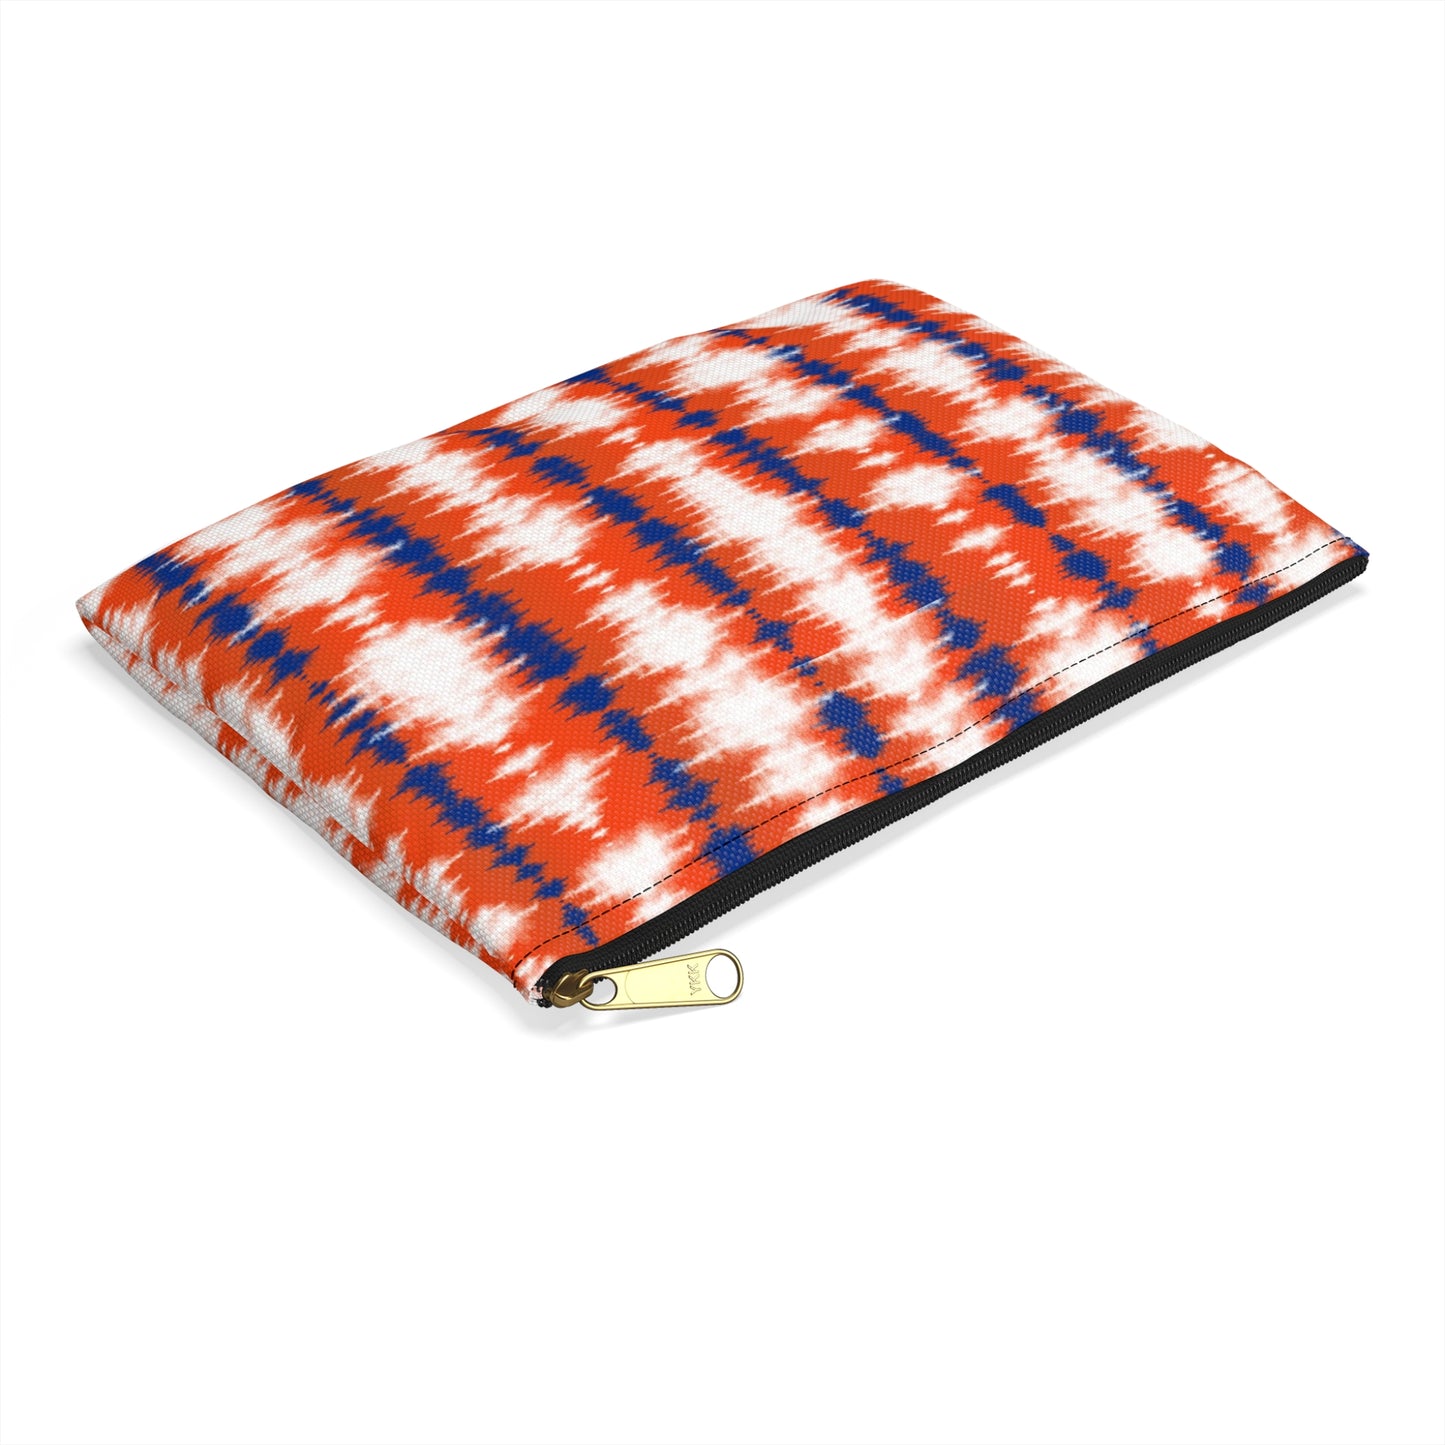 Orange and Blue Tie Dye - Accessory Pouch / Makeup Case / Travel Pouch / Pencil case / Art Case